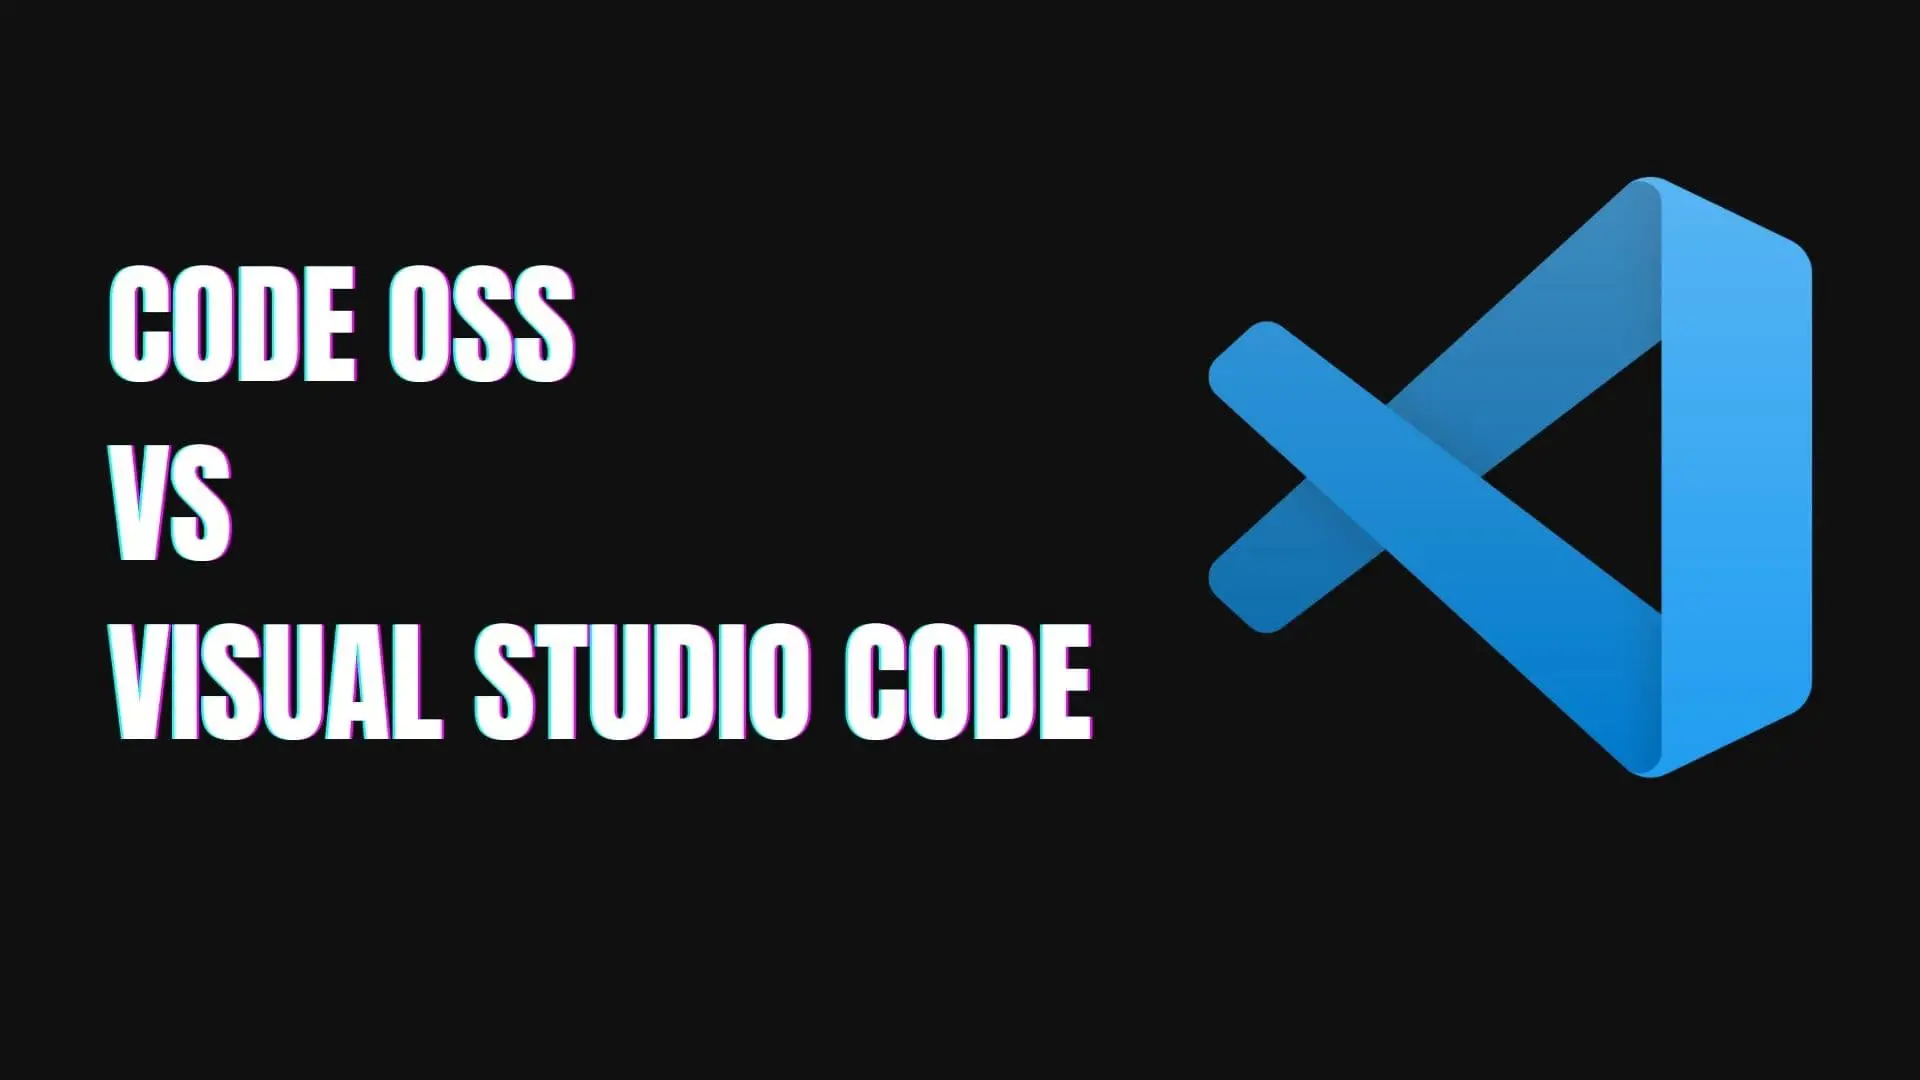 visual-studio-code-vs-code-oss